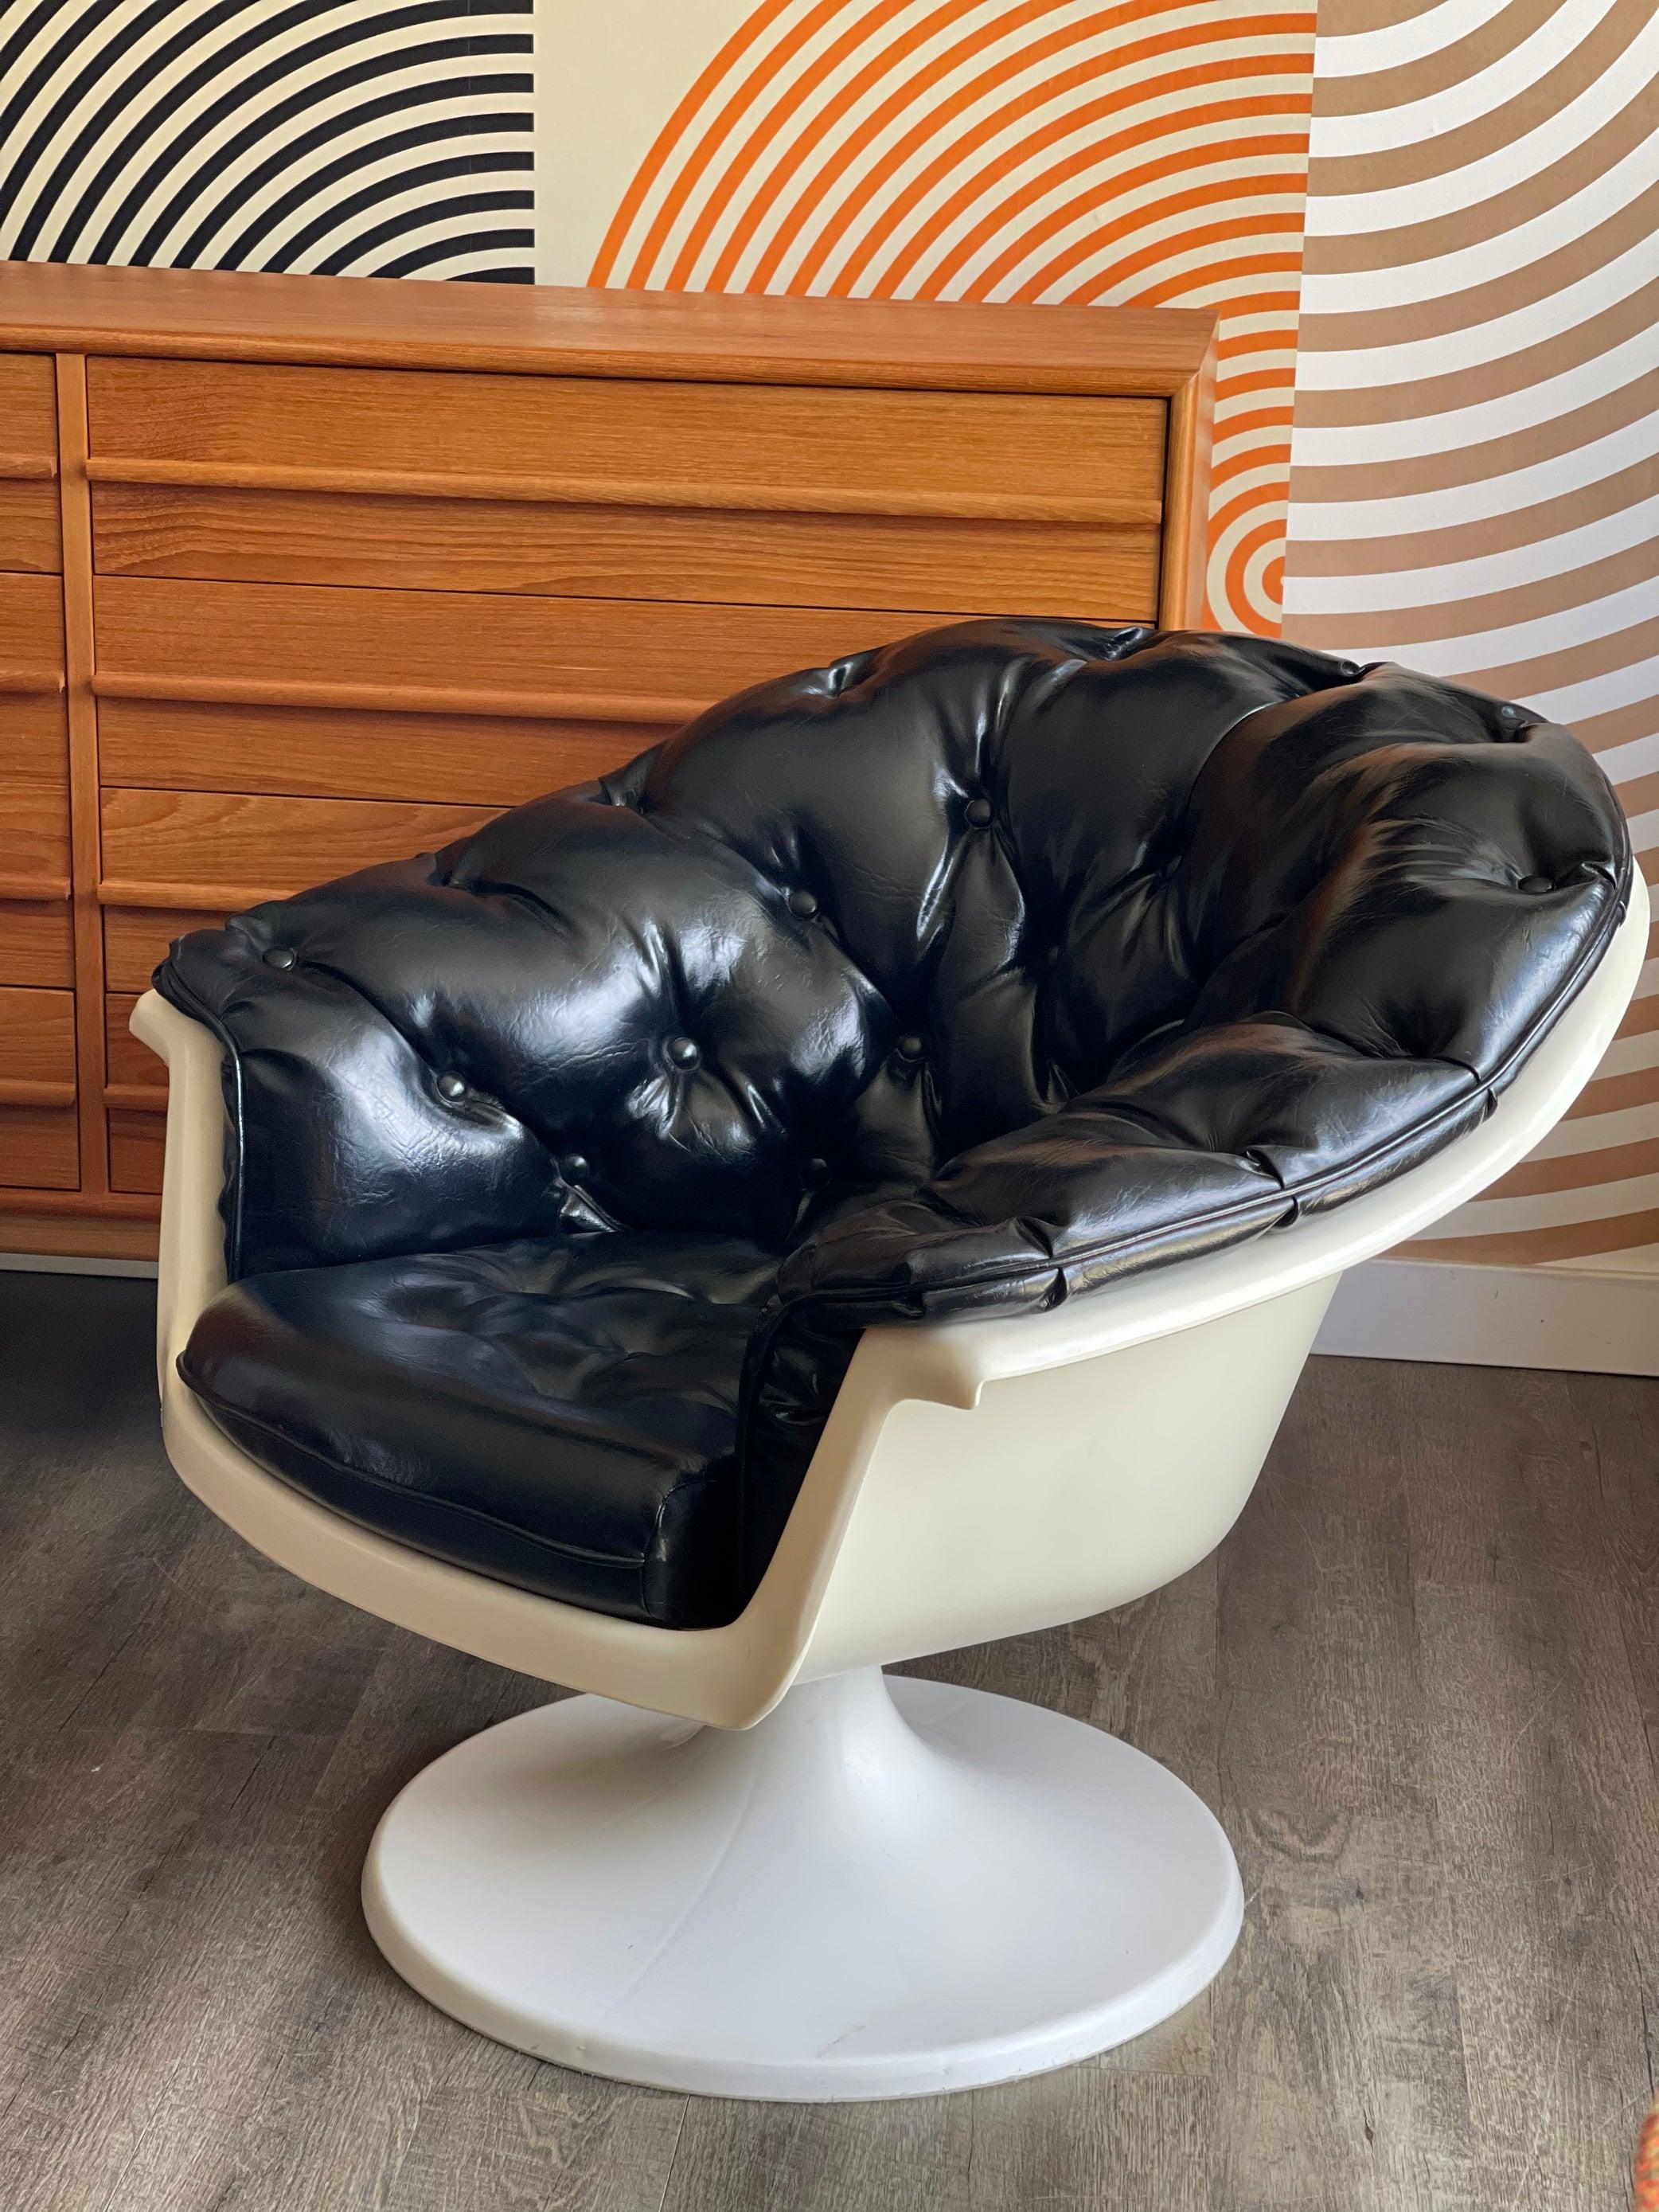 Ce fauteuil de salon de l'ère spatiale avec une base en tulipe est en excellent état vintage. Le cadre n'a pas de fissures ou d'éclats. La tapisserie en vinyle tufté est également en bon état. 

